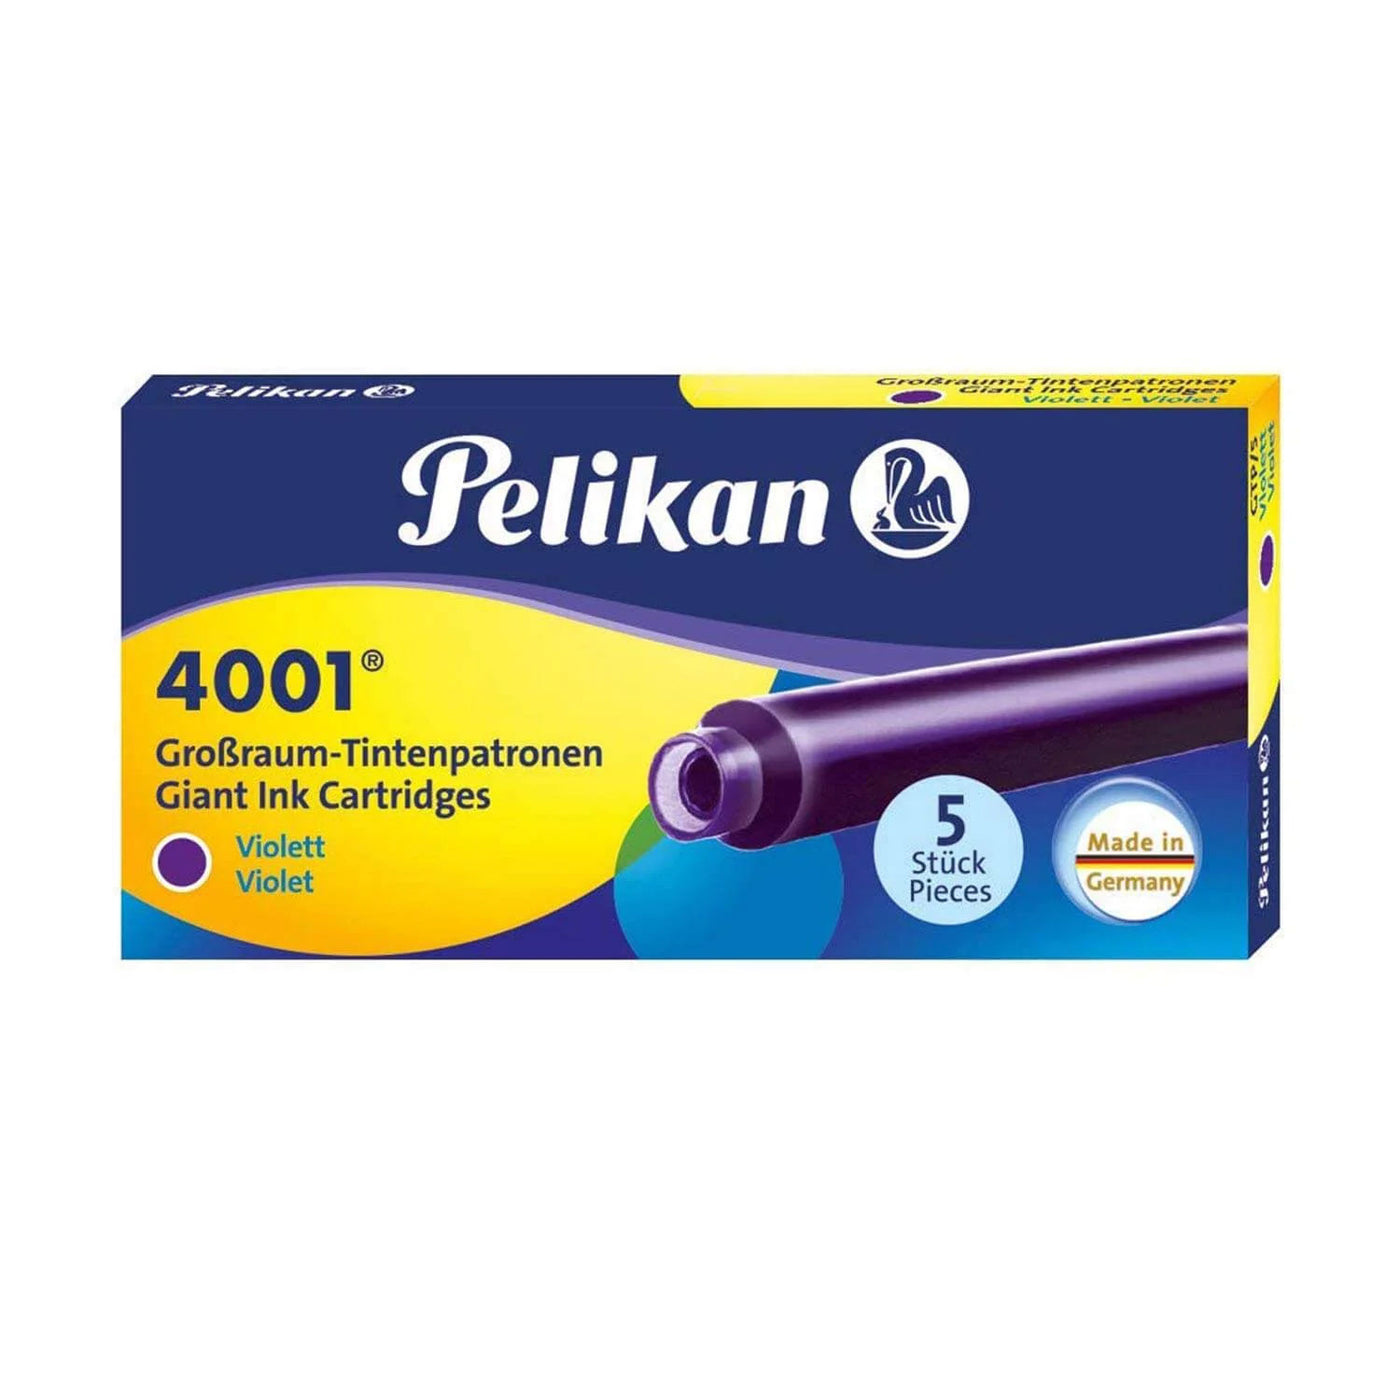 Pelikan 4001 Large Ink Cartridge Pack of 5 - Violet